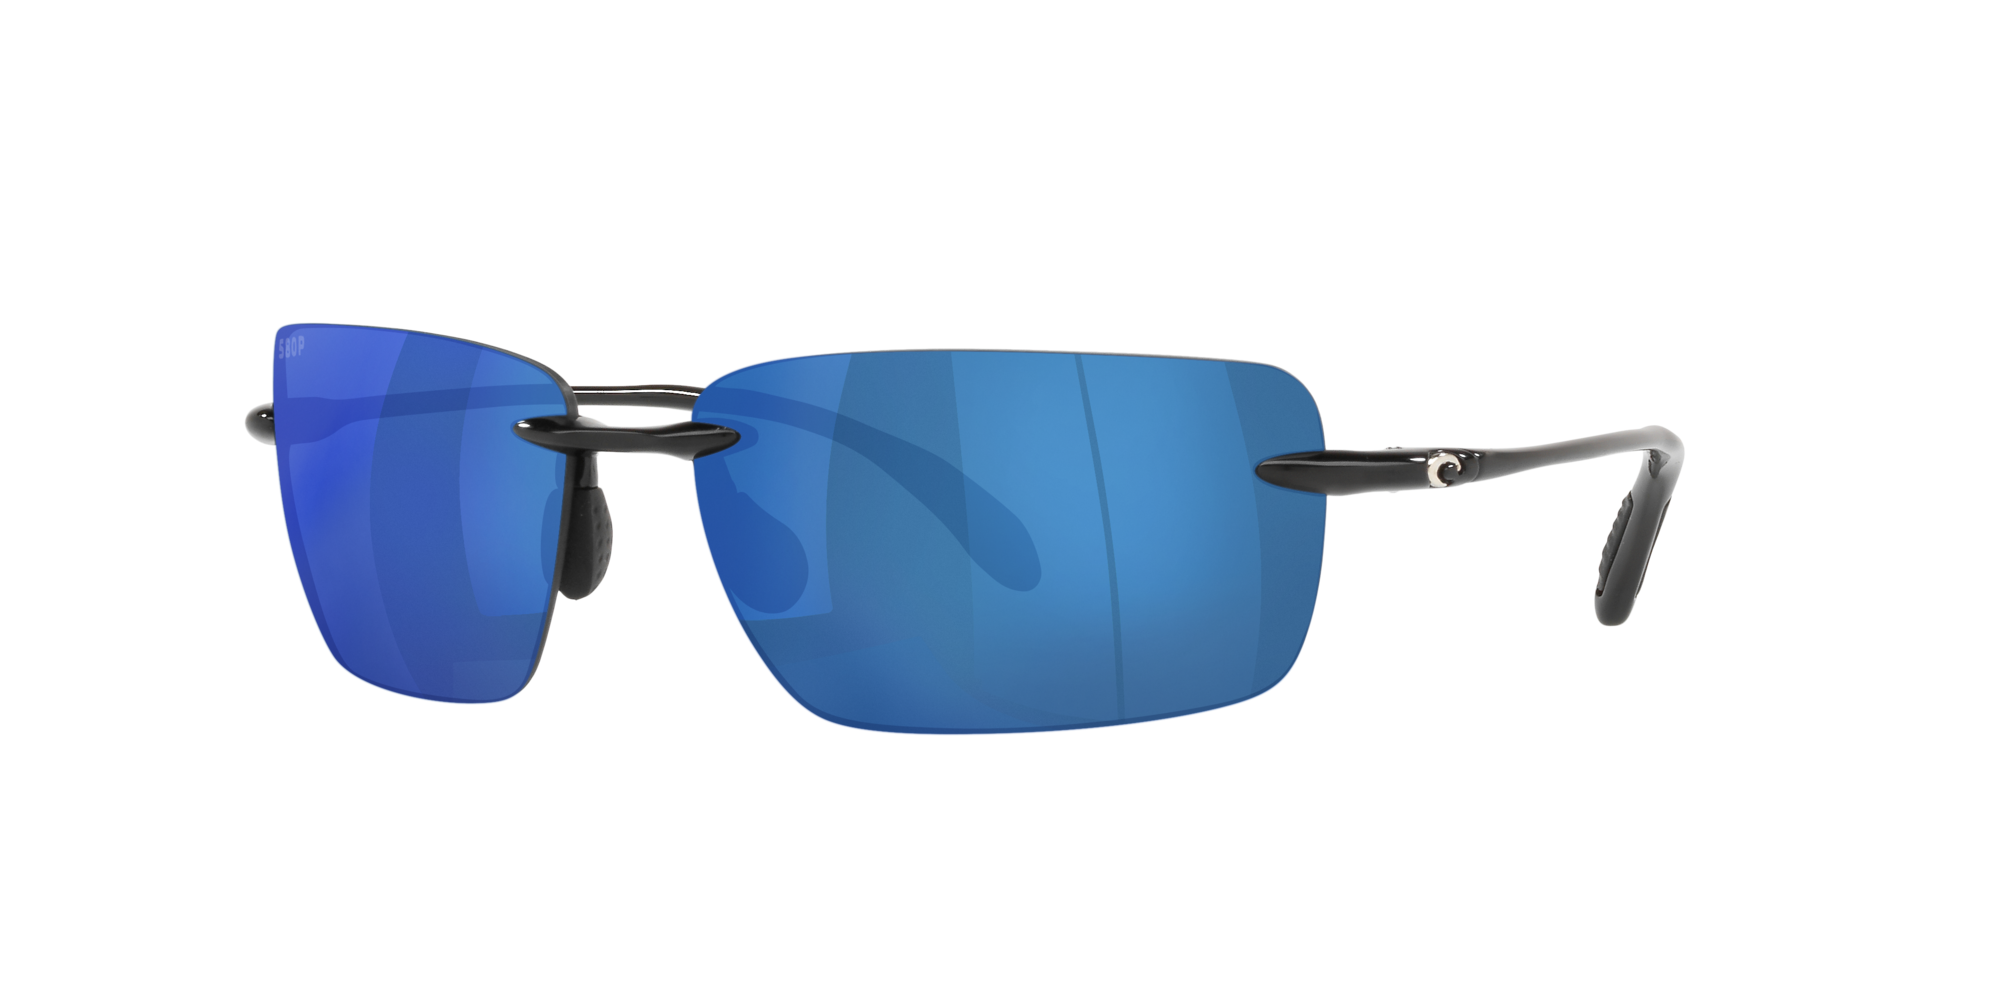 Costa del Mar Double Haul Polarized Sunglasses Tortoise/Blue Mirror 580G Glass 